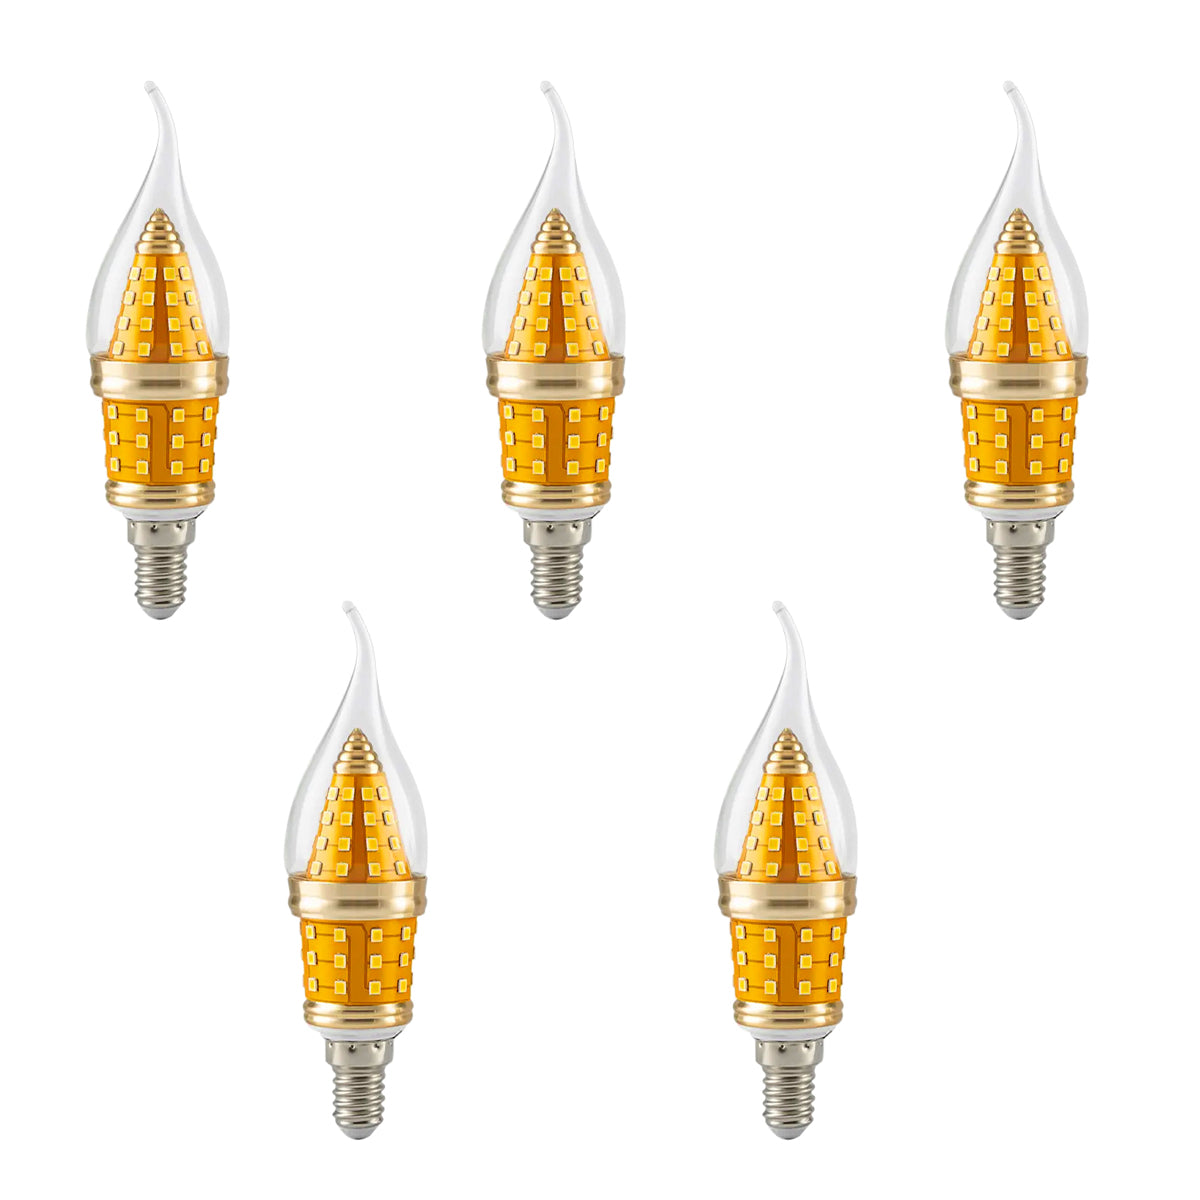 12W LED Kerzenlampe Filament gebogene Spitze kaltweiß warmweiß B22-Sockel Kandelaber-Kerzenlampe~2778